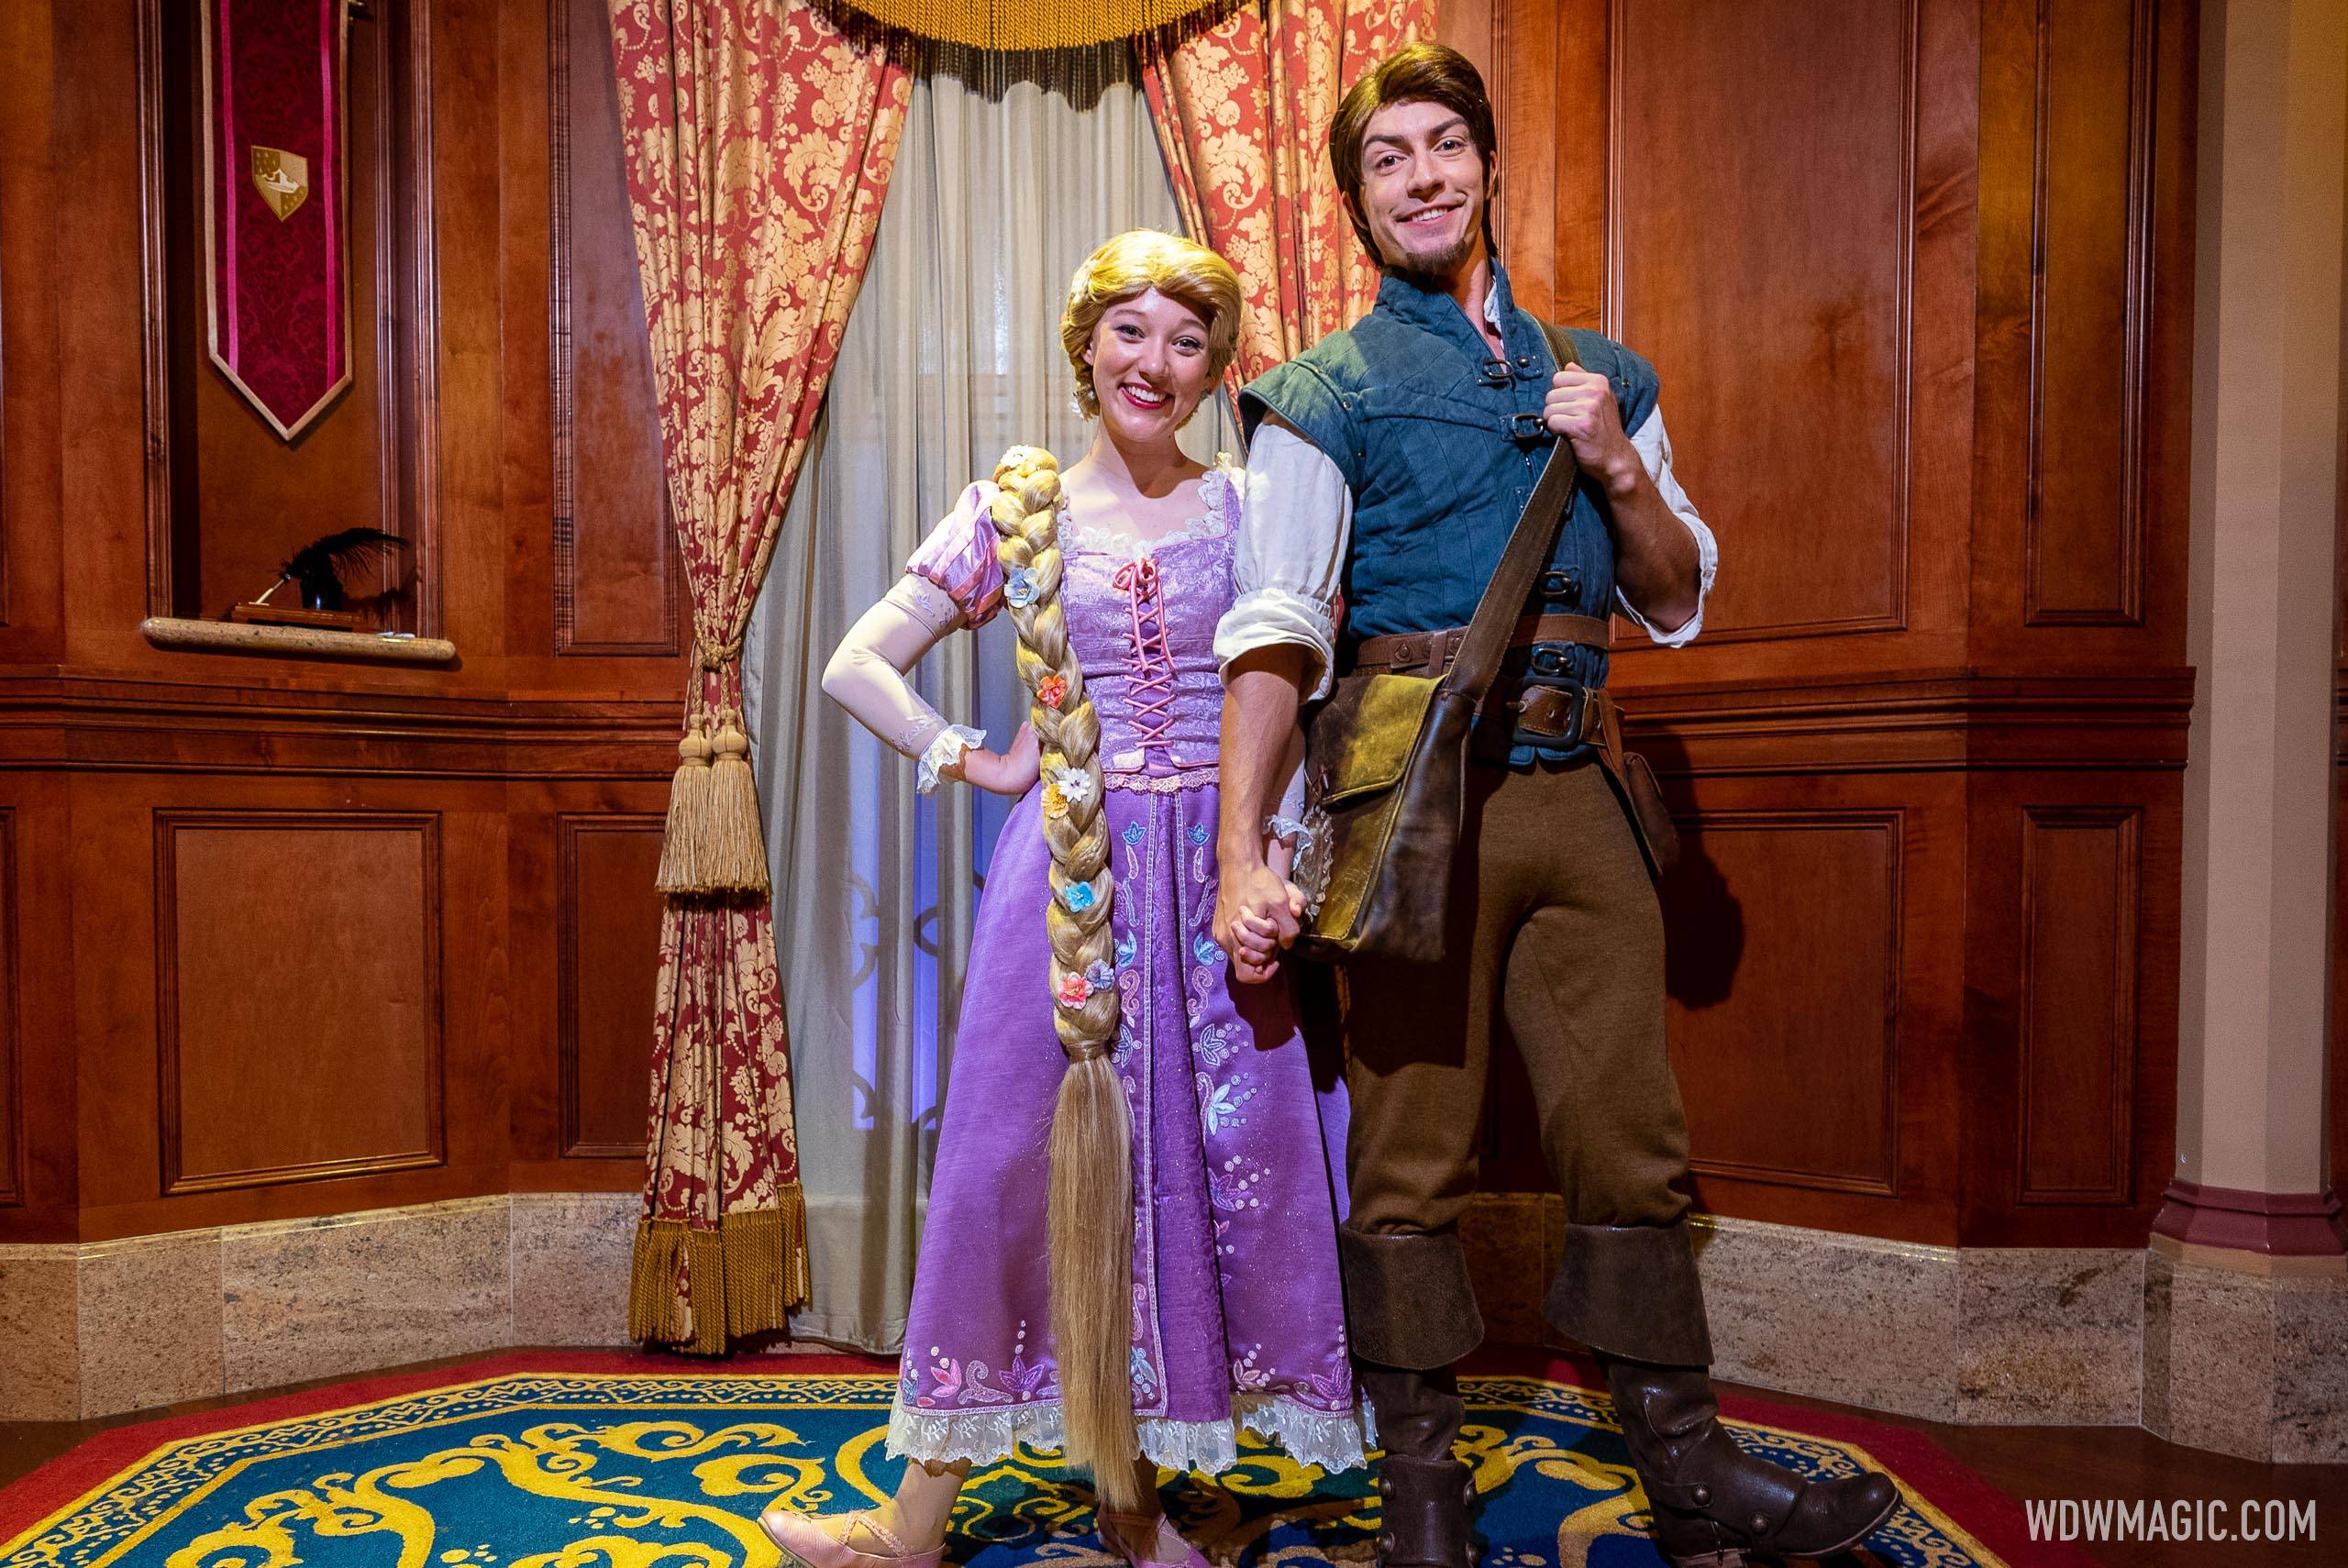 Princess Fairytale Hall - Rapunzel and Flynn